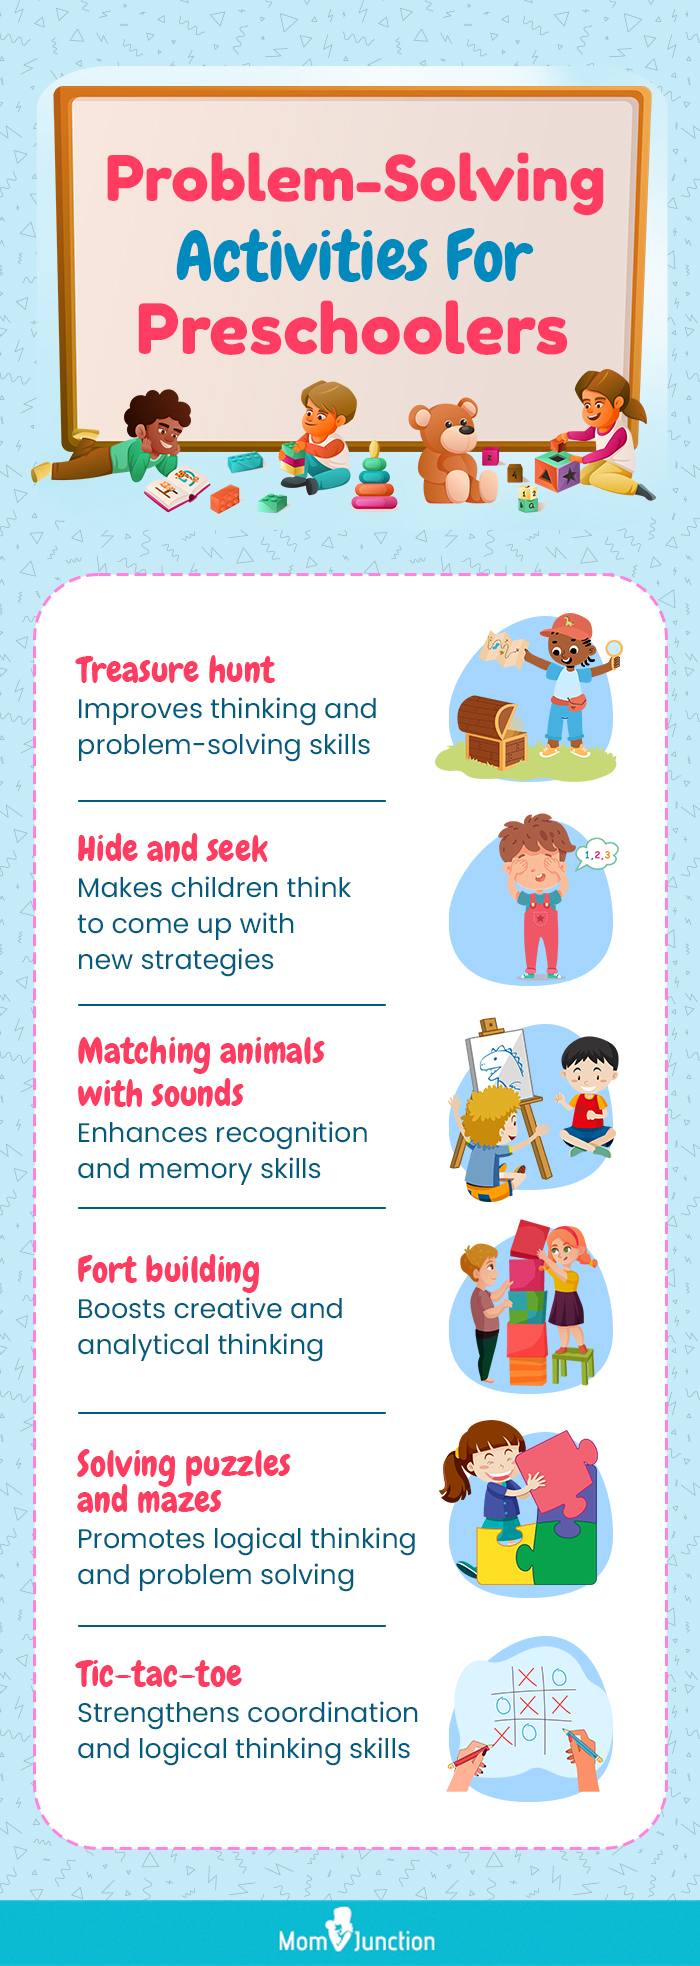 problem-solving activities for preschoolers (infographic)